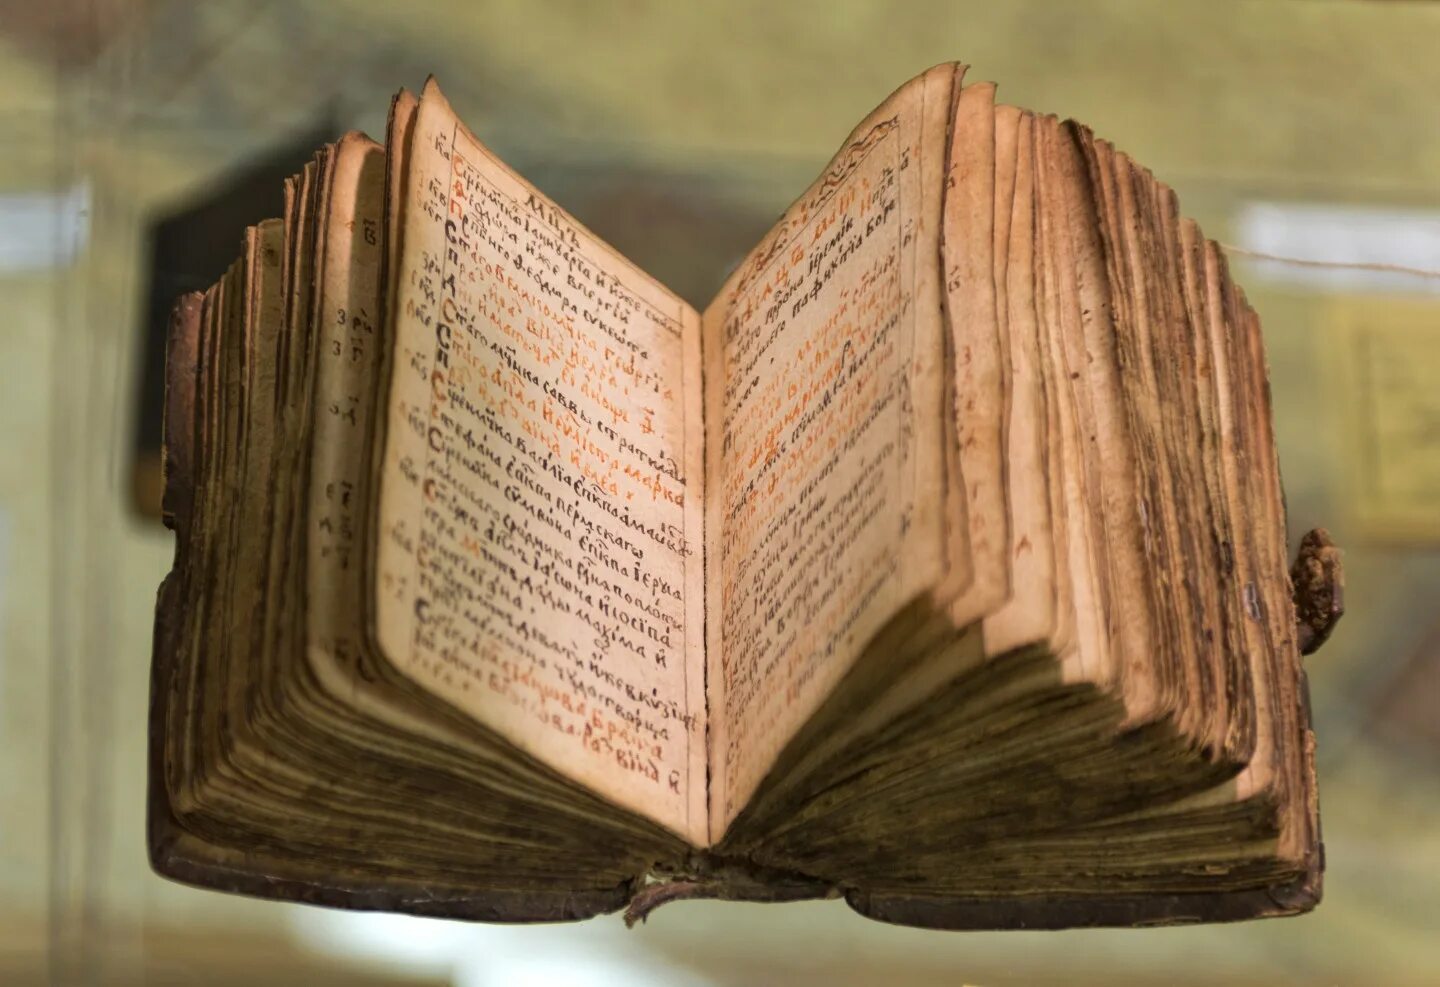 Самая древняя печатная книга